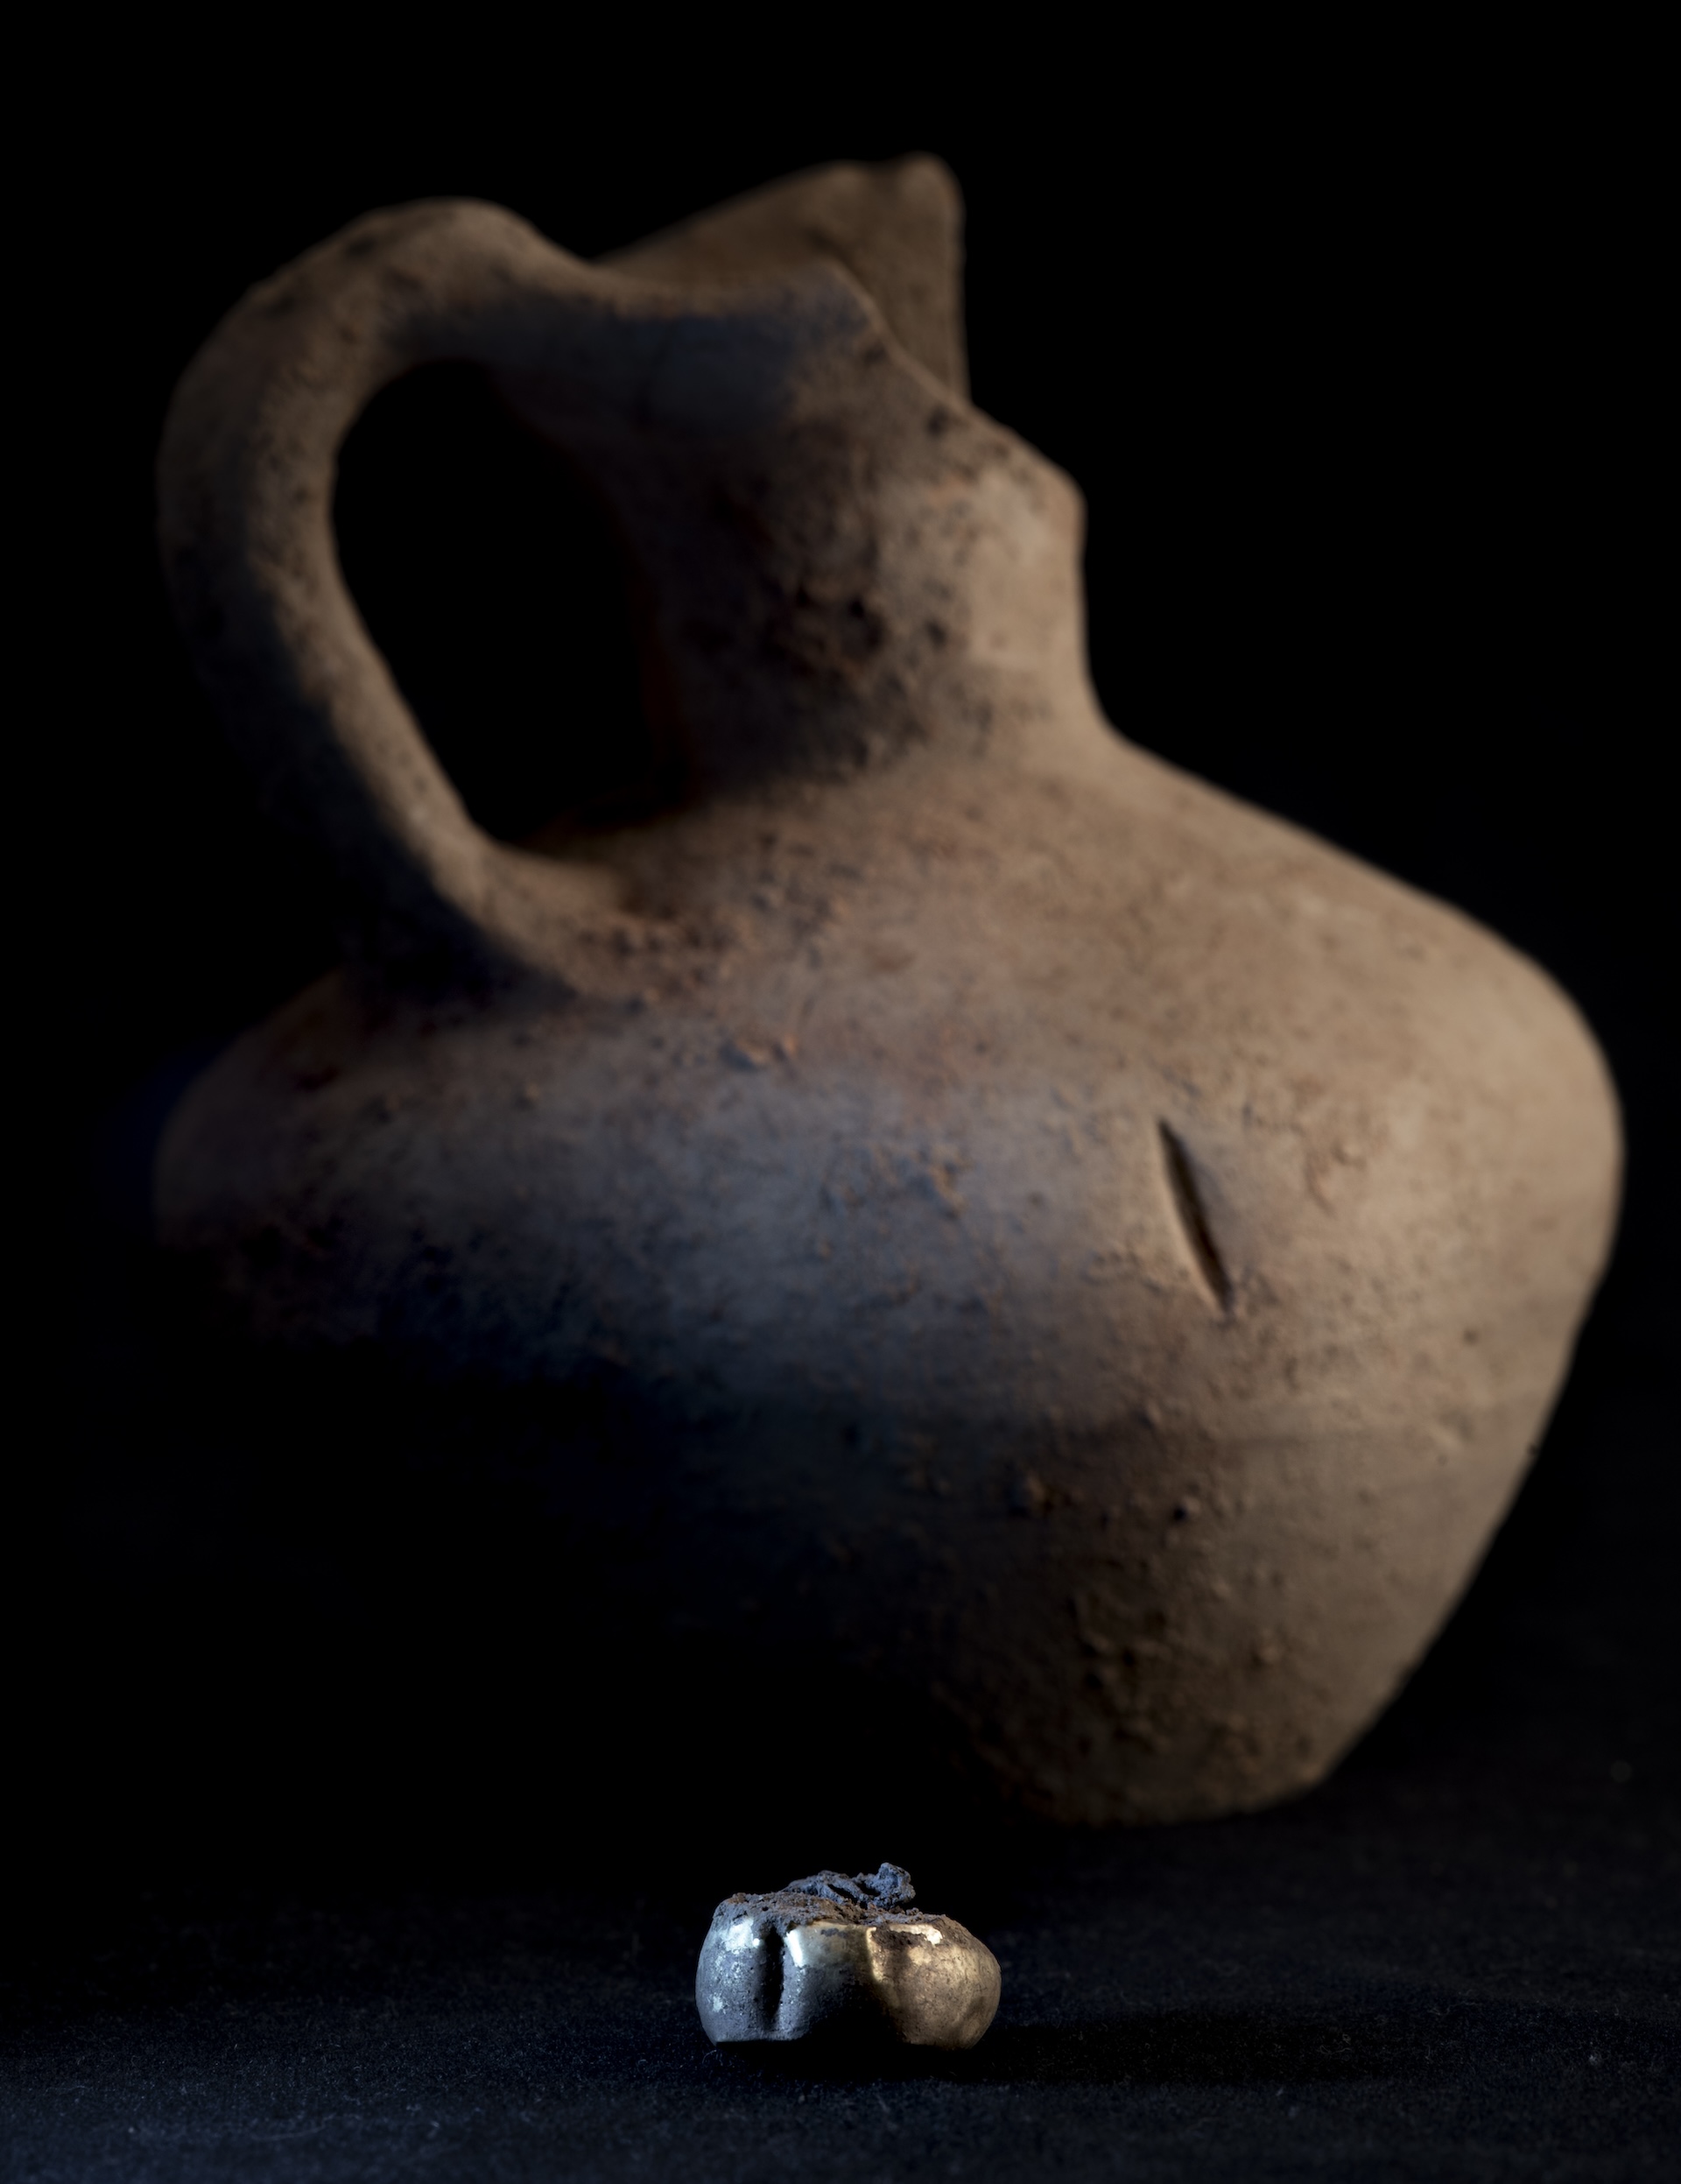 Керамический кувшин и серьга, обнаруженные в Тоссаль-де-Балтарга.